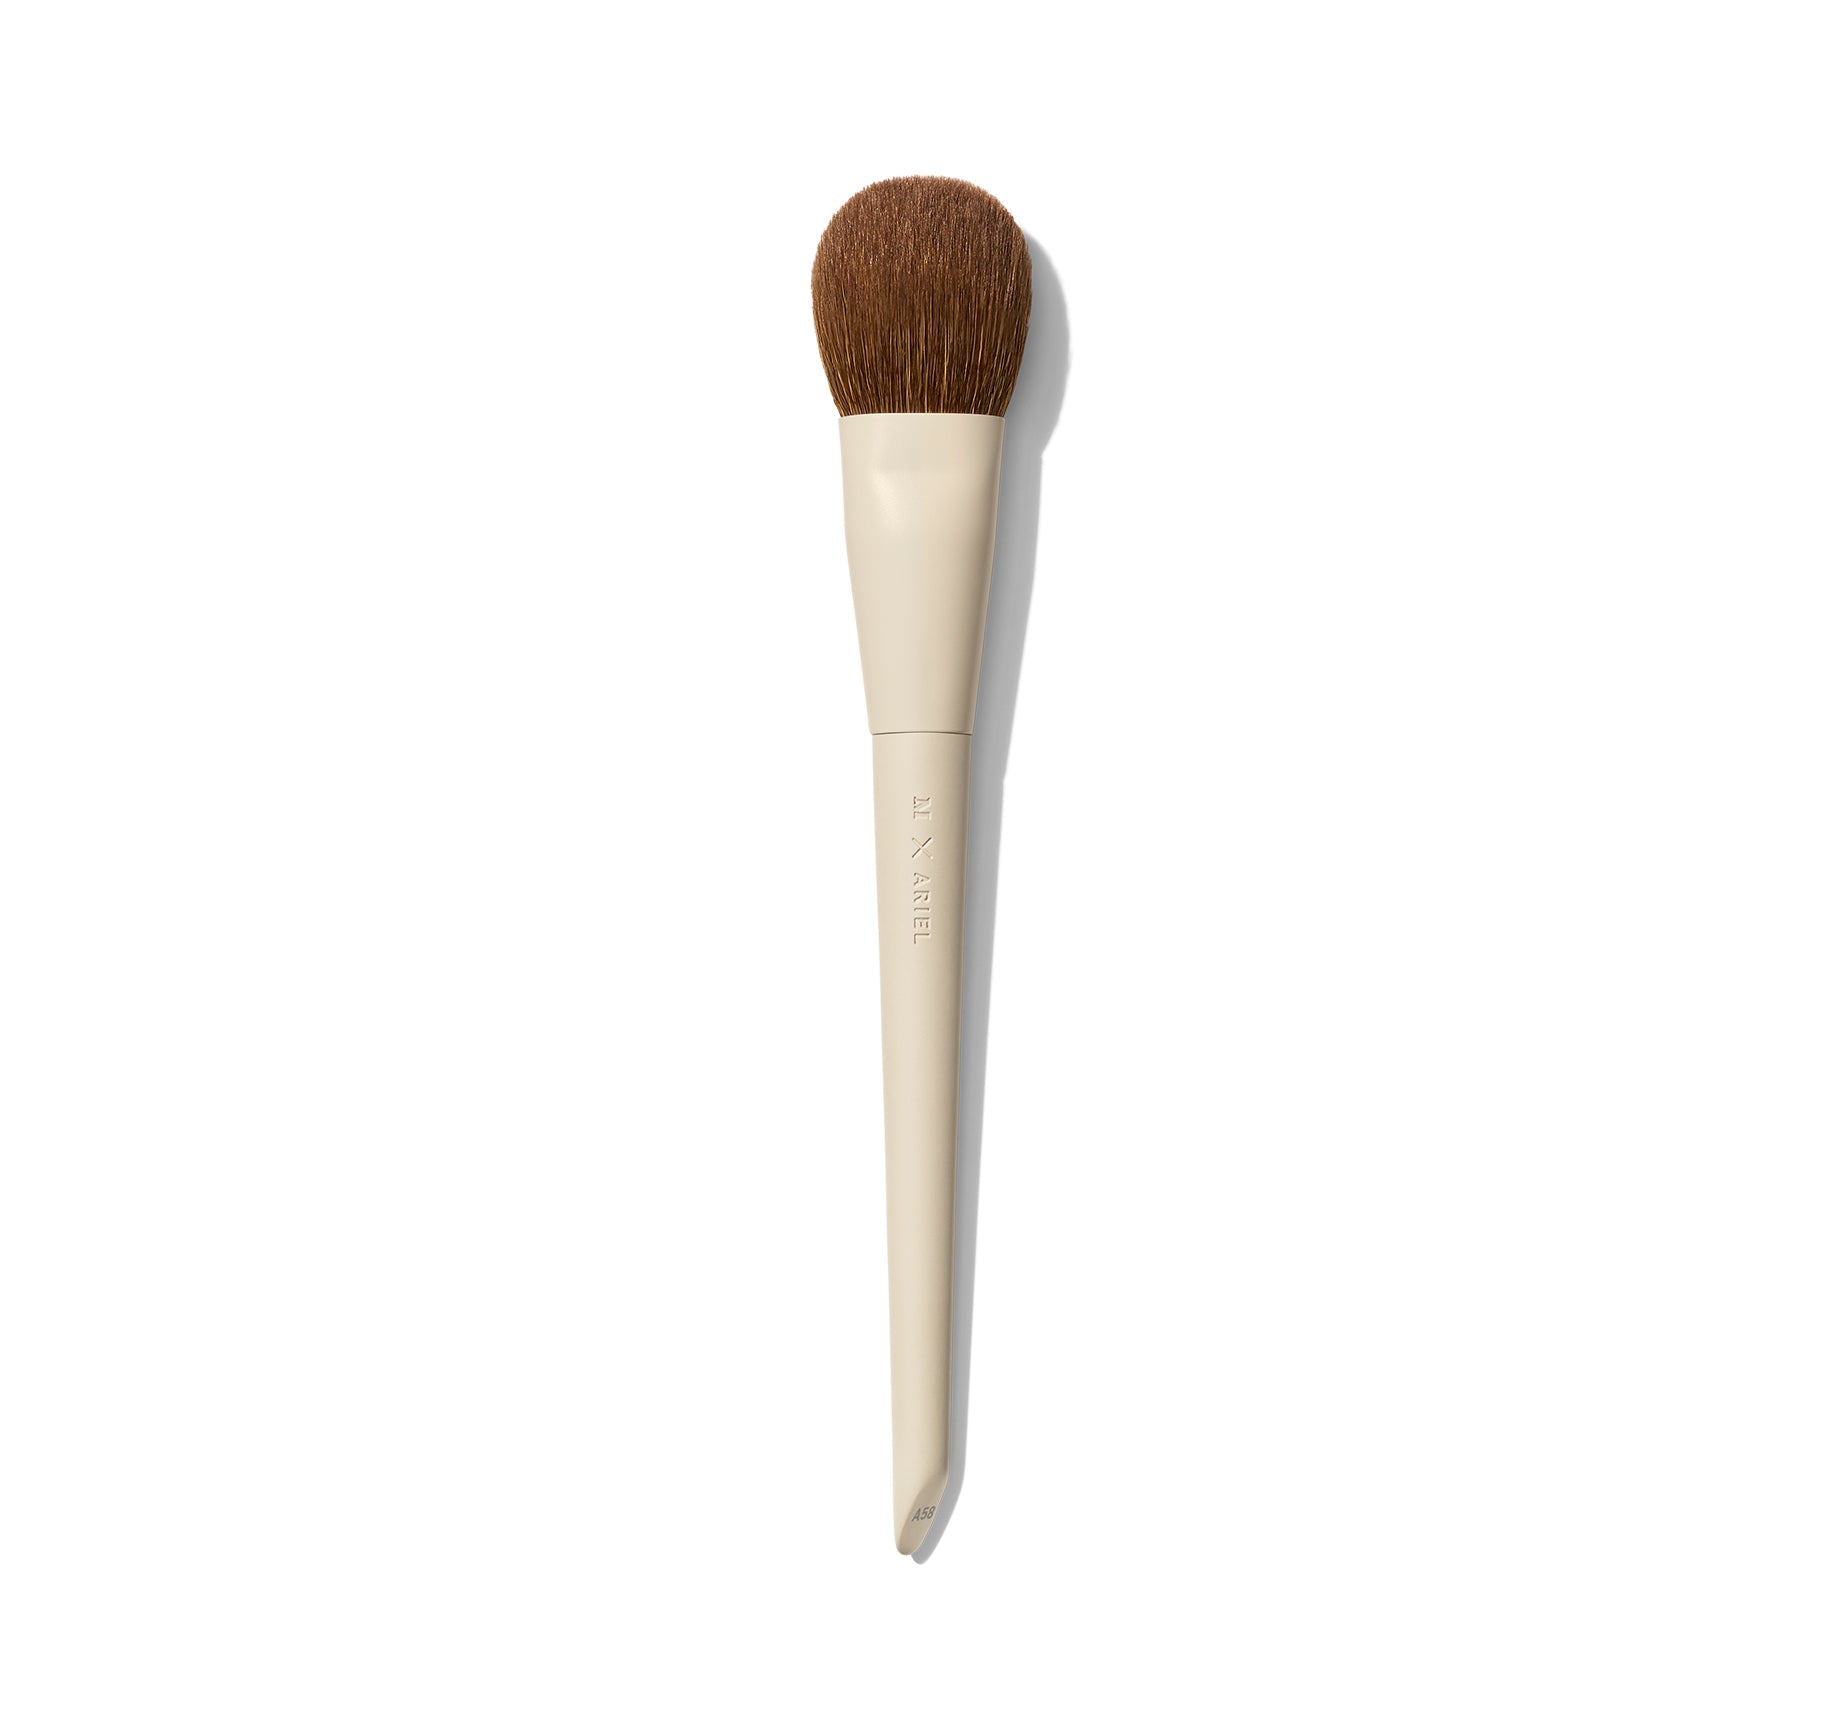 Morphe X Ariel A58 Signature Cream Contour Brush - Image 1